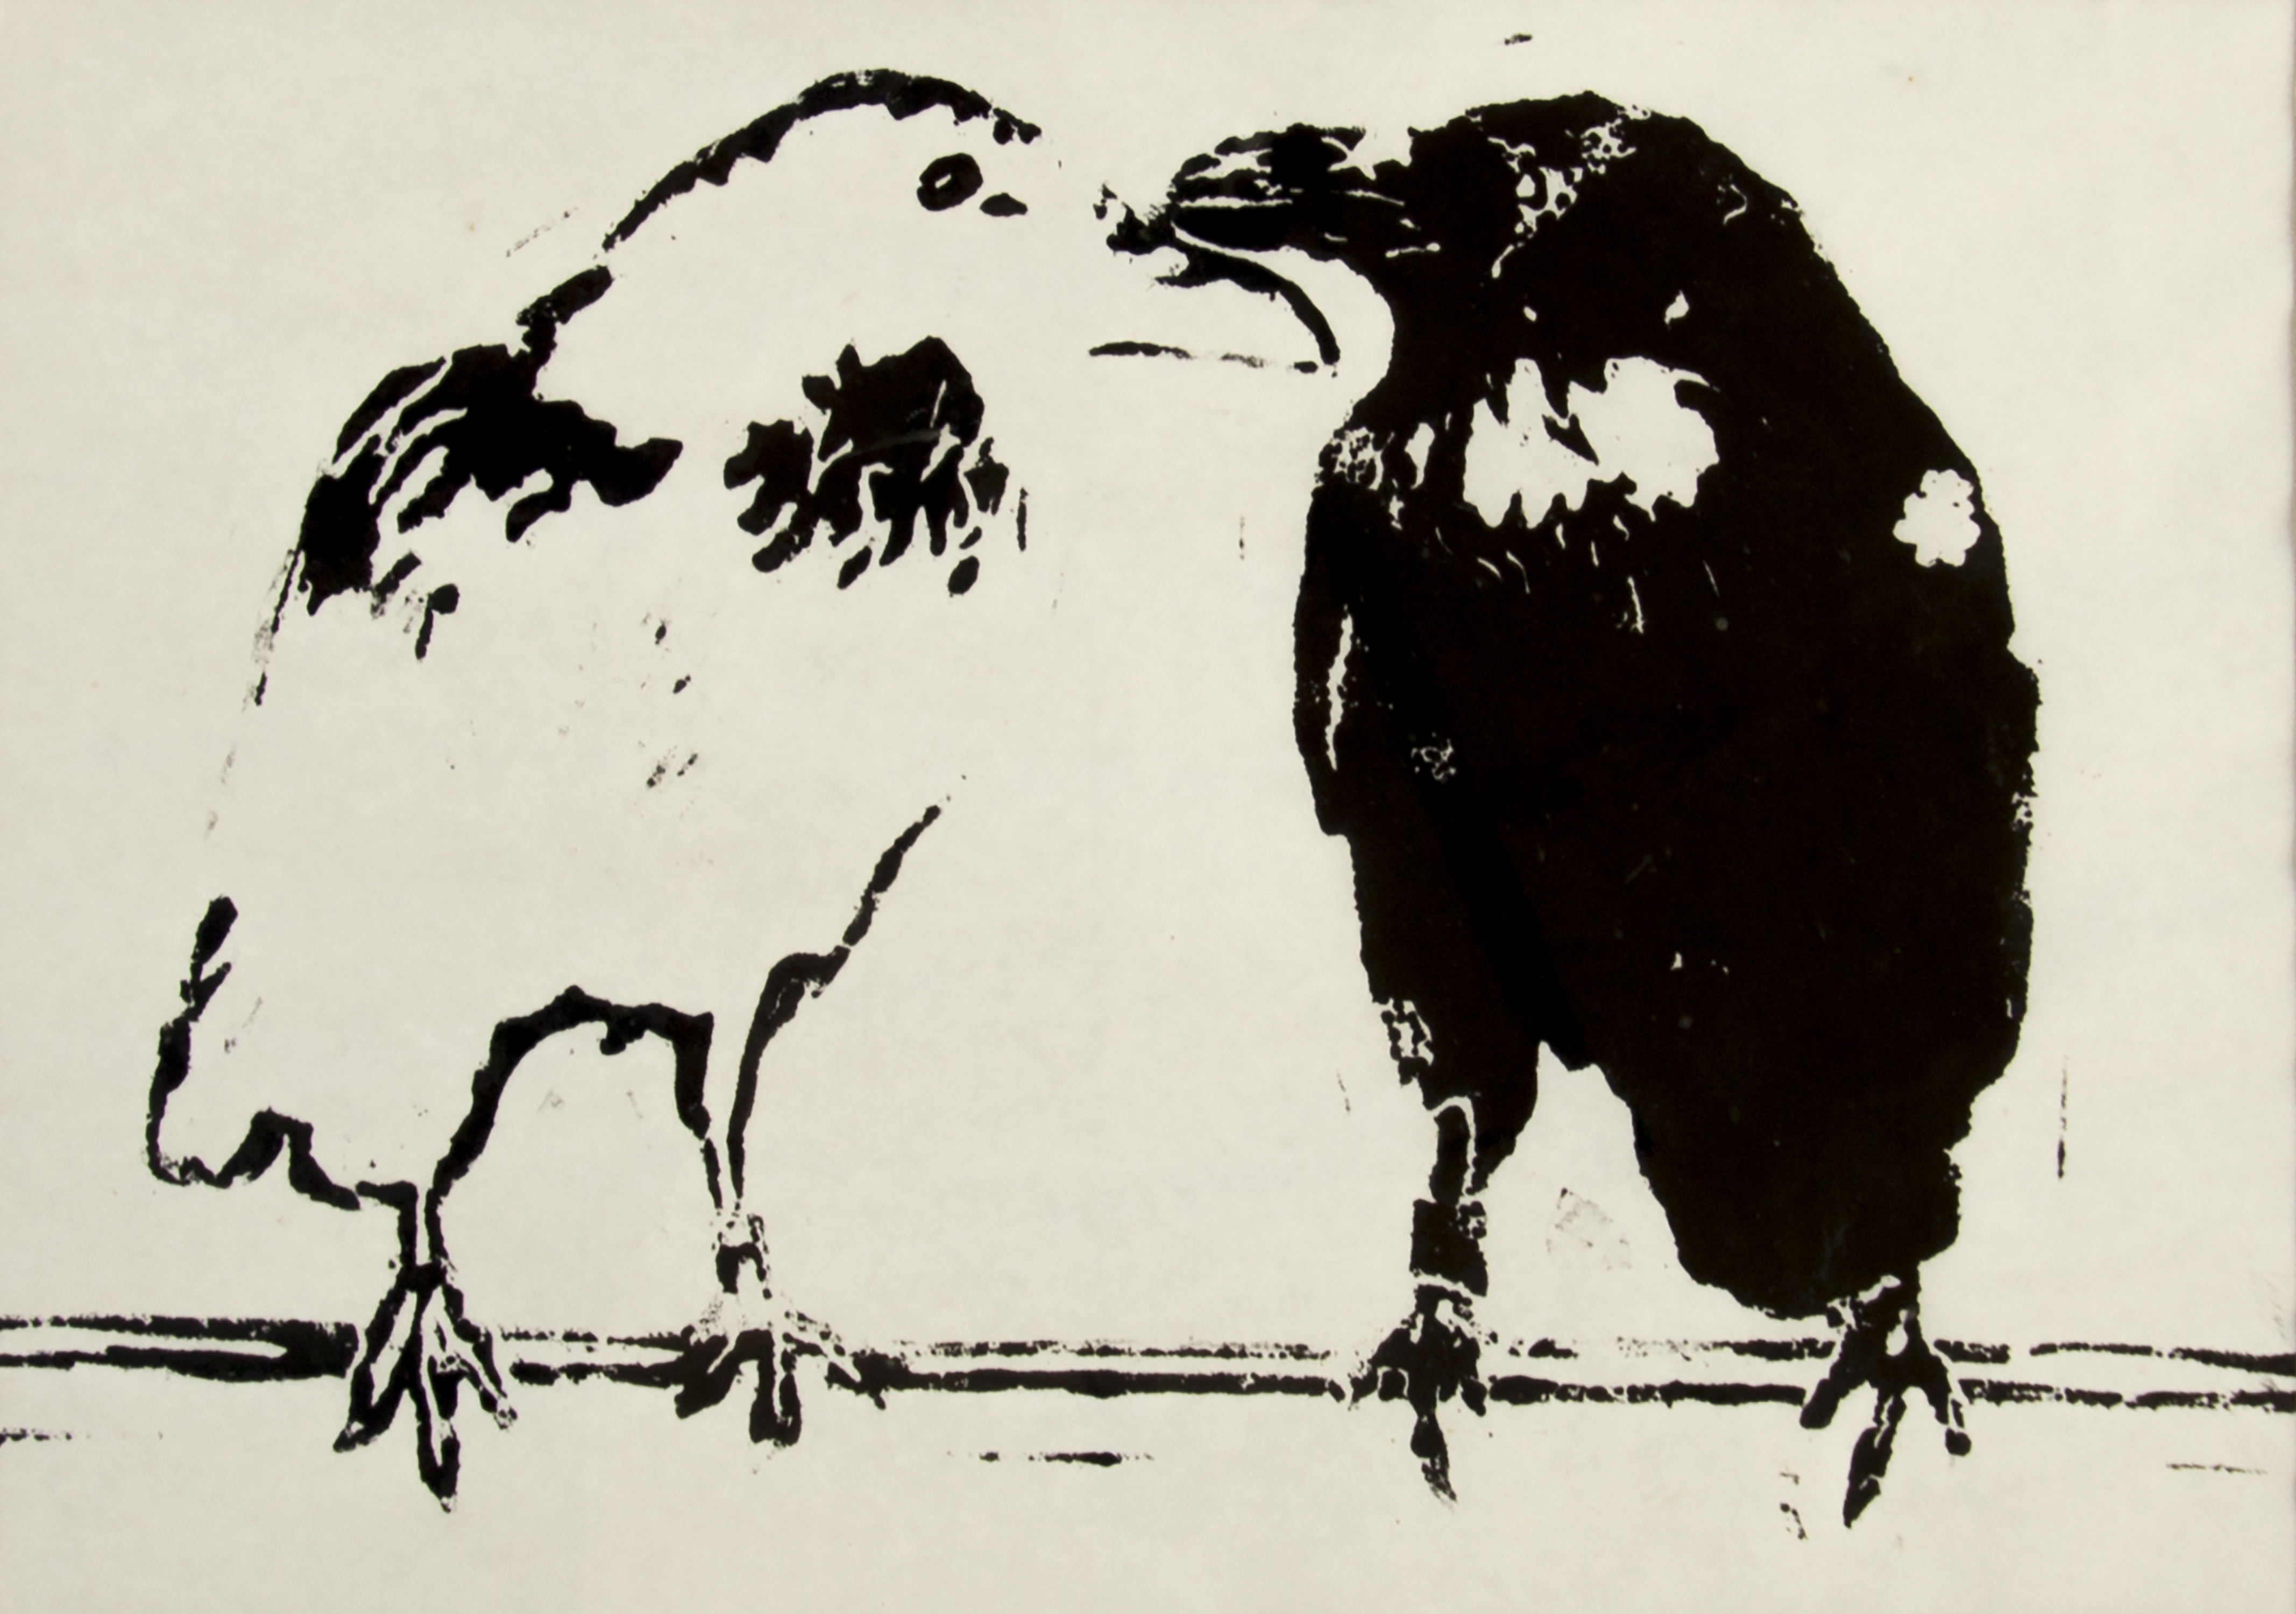 Gor Soudan - Two Crows